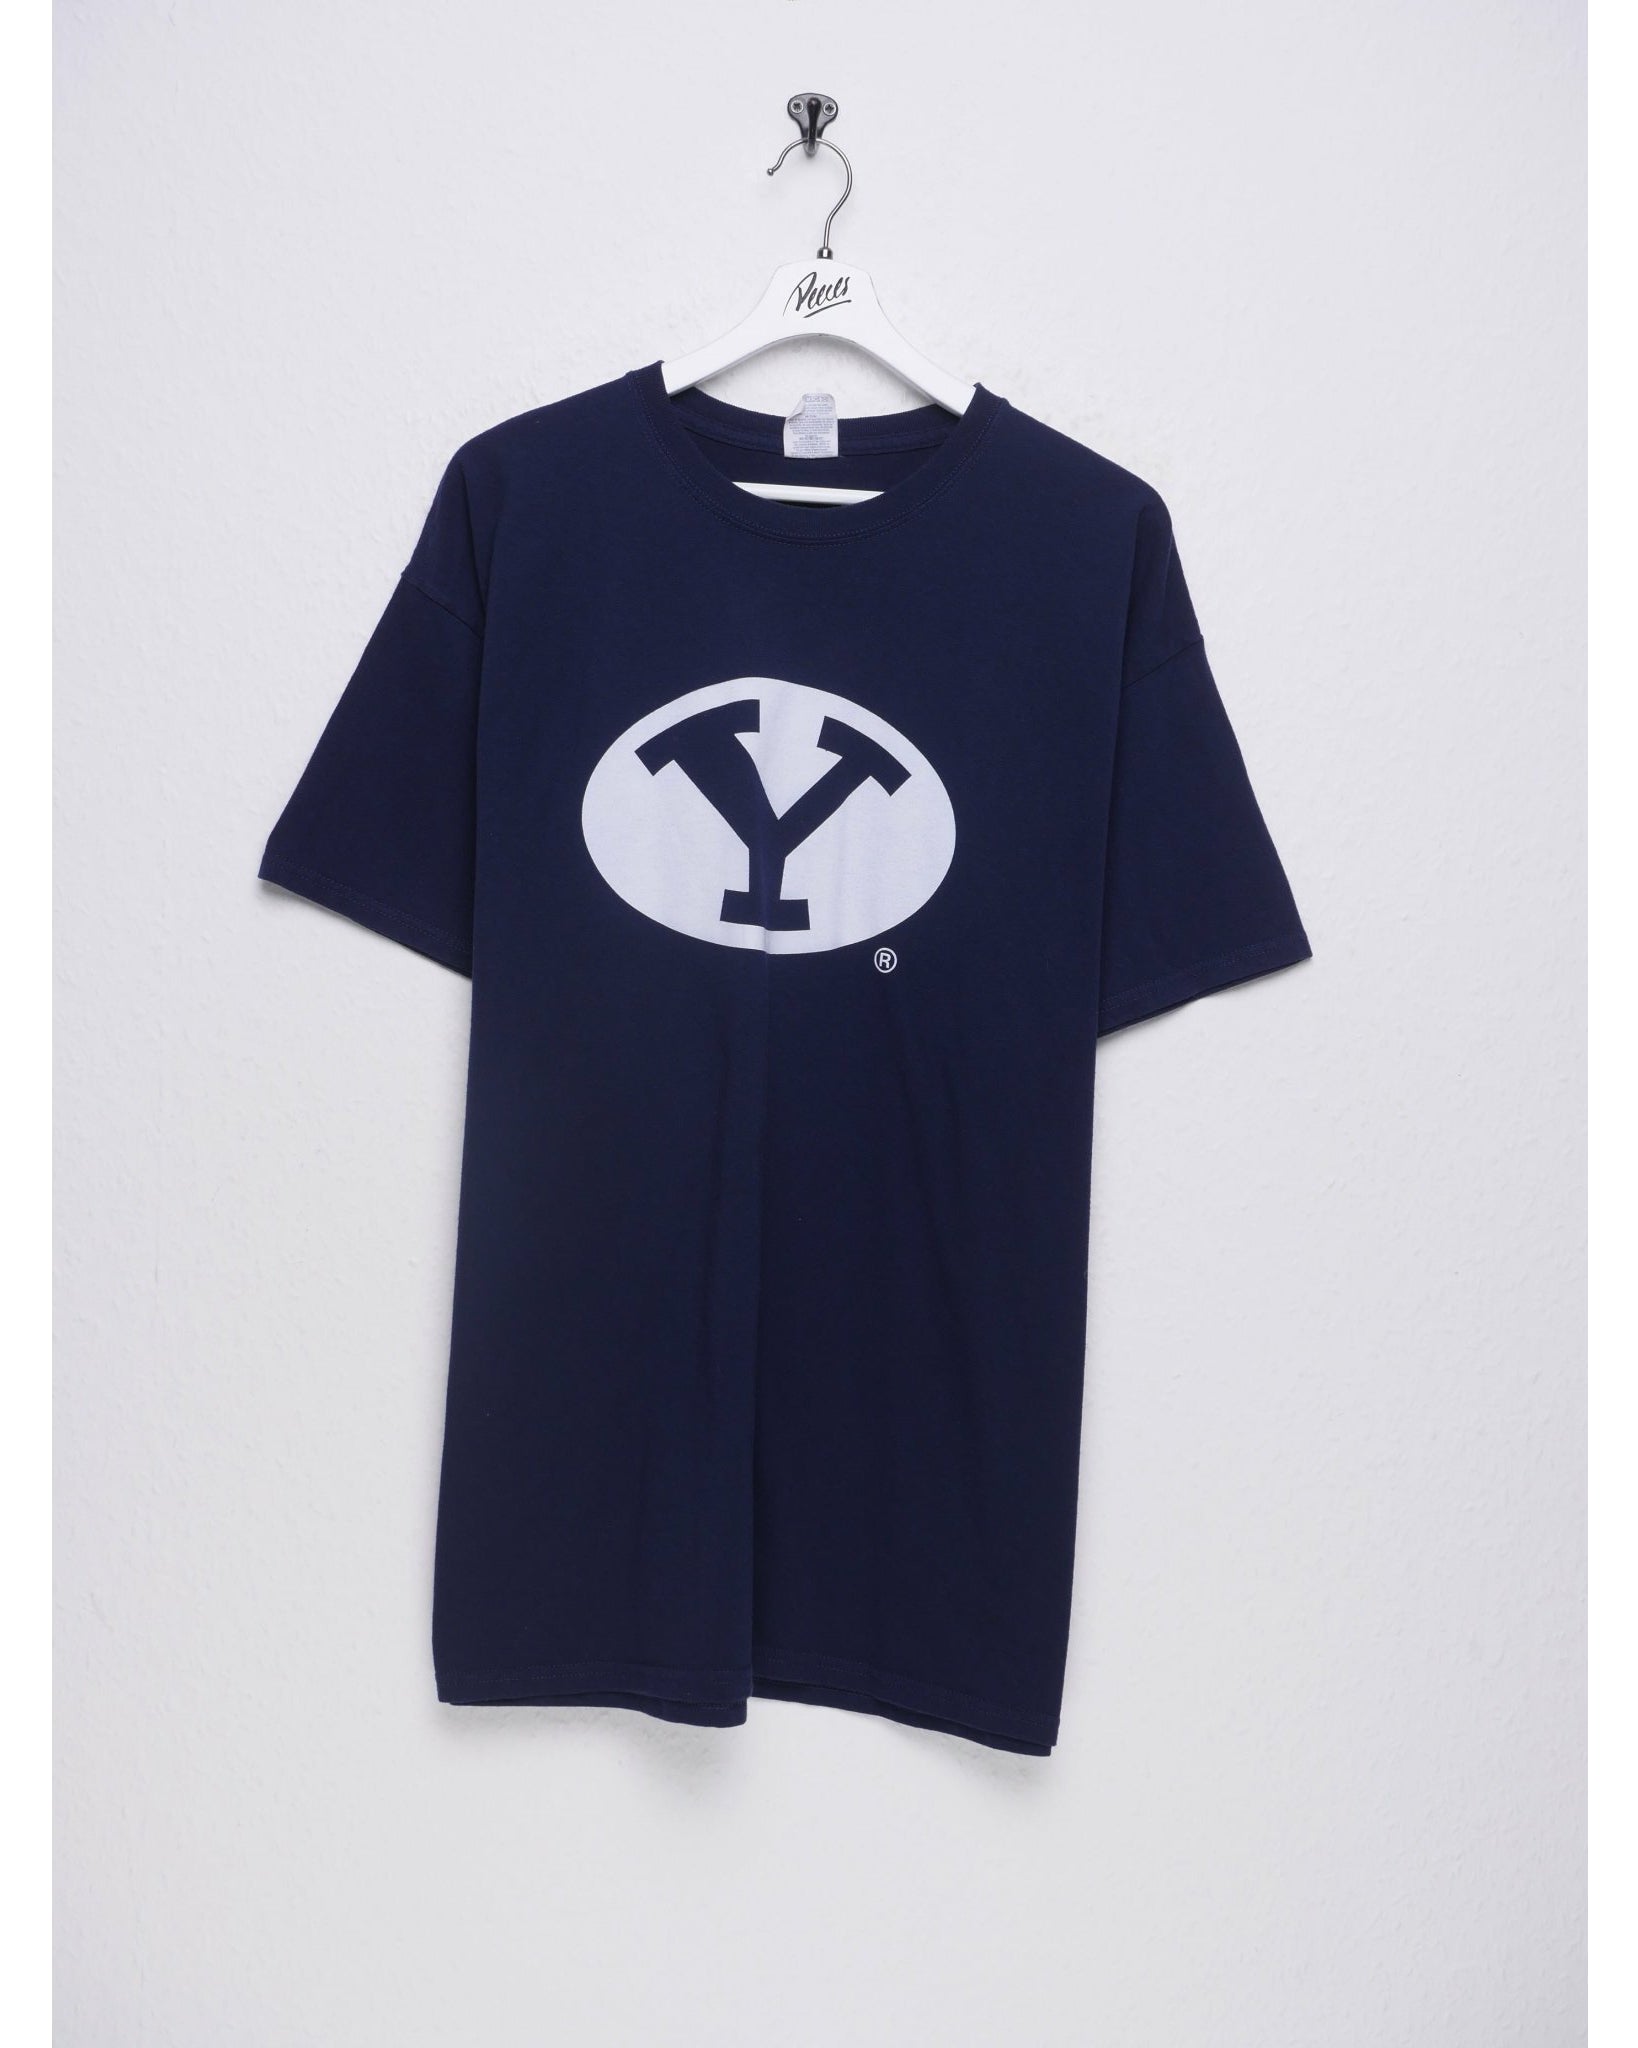 Y printed Logo navy Shirt - Peeces